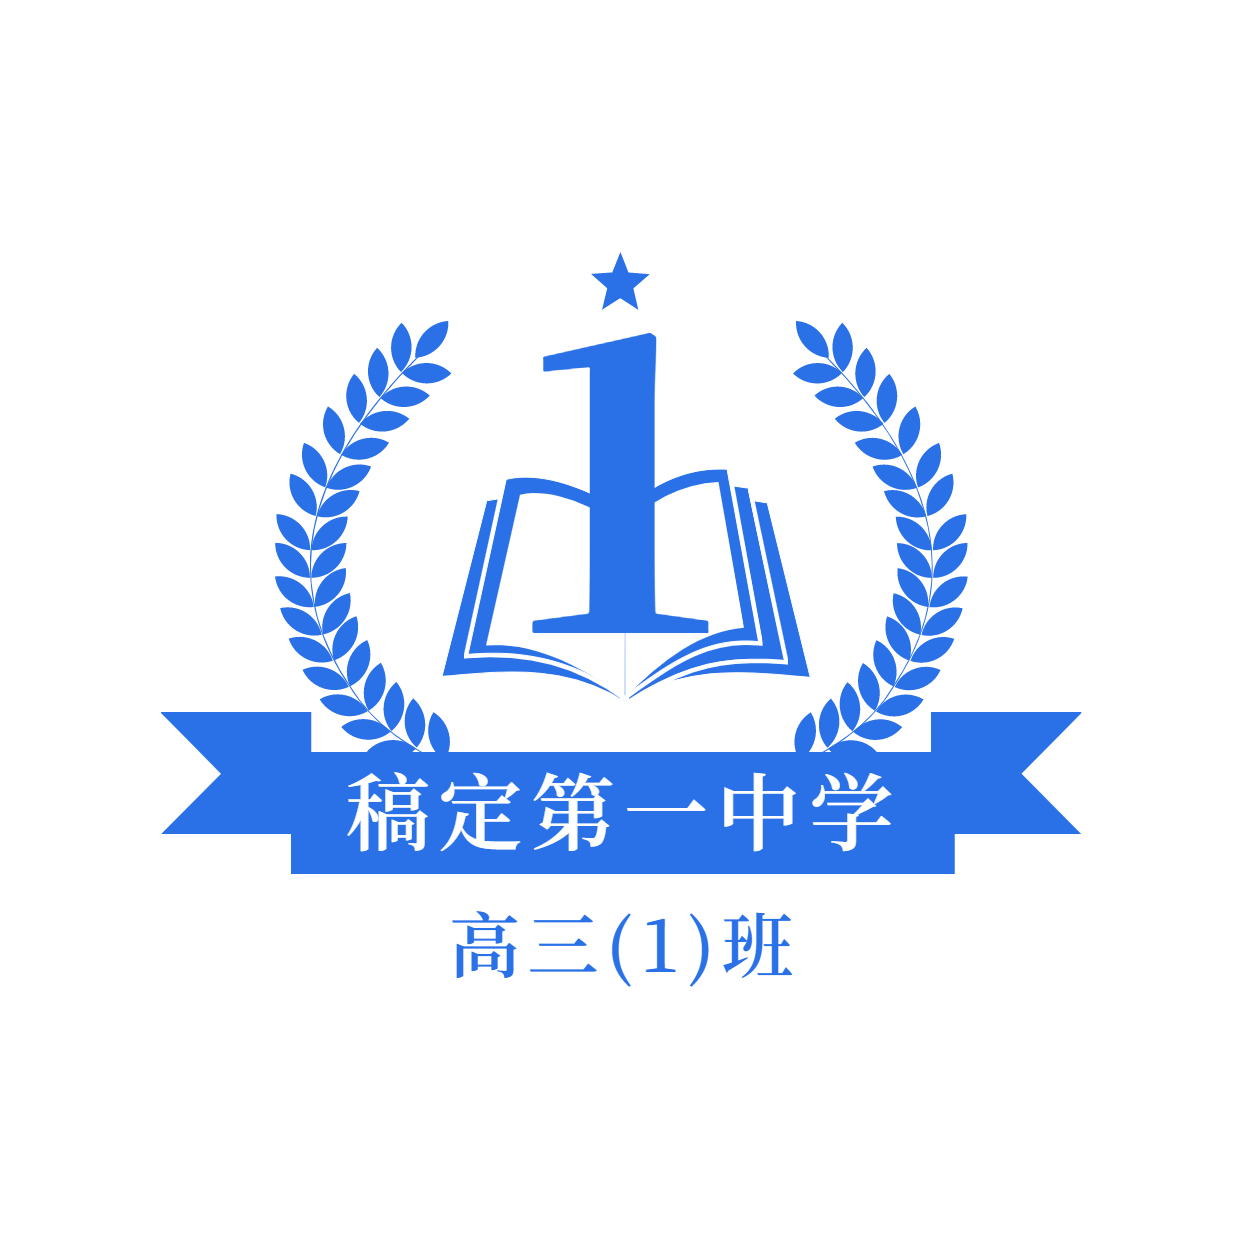 教育班级班徽校徽头像logo